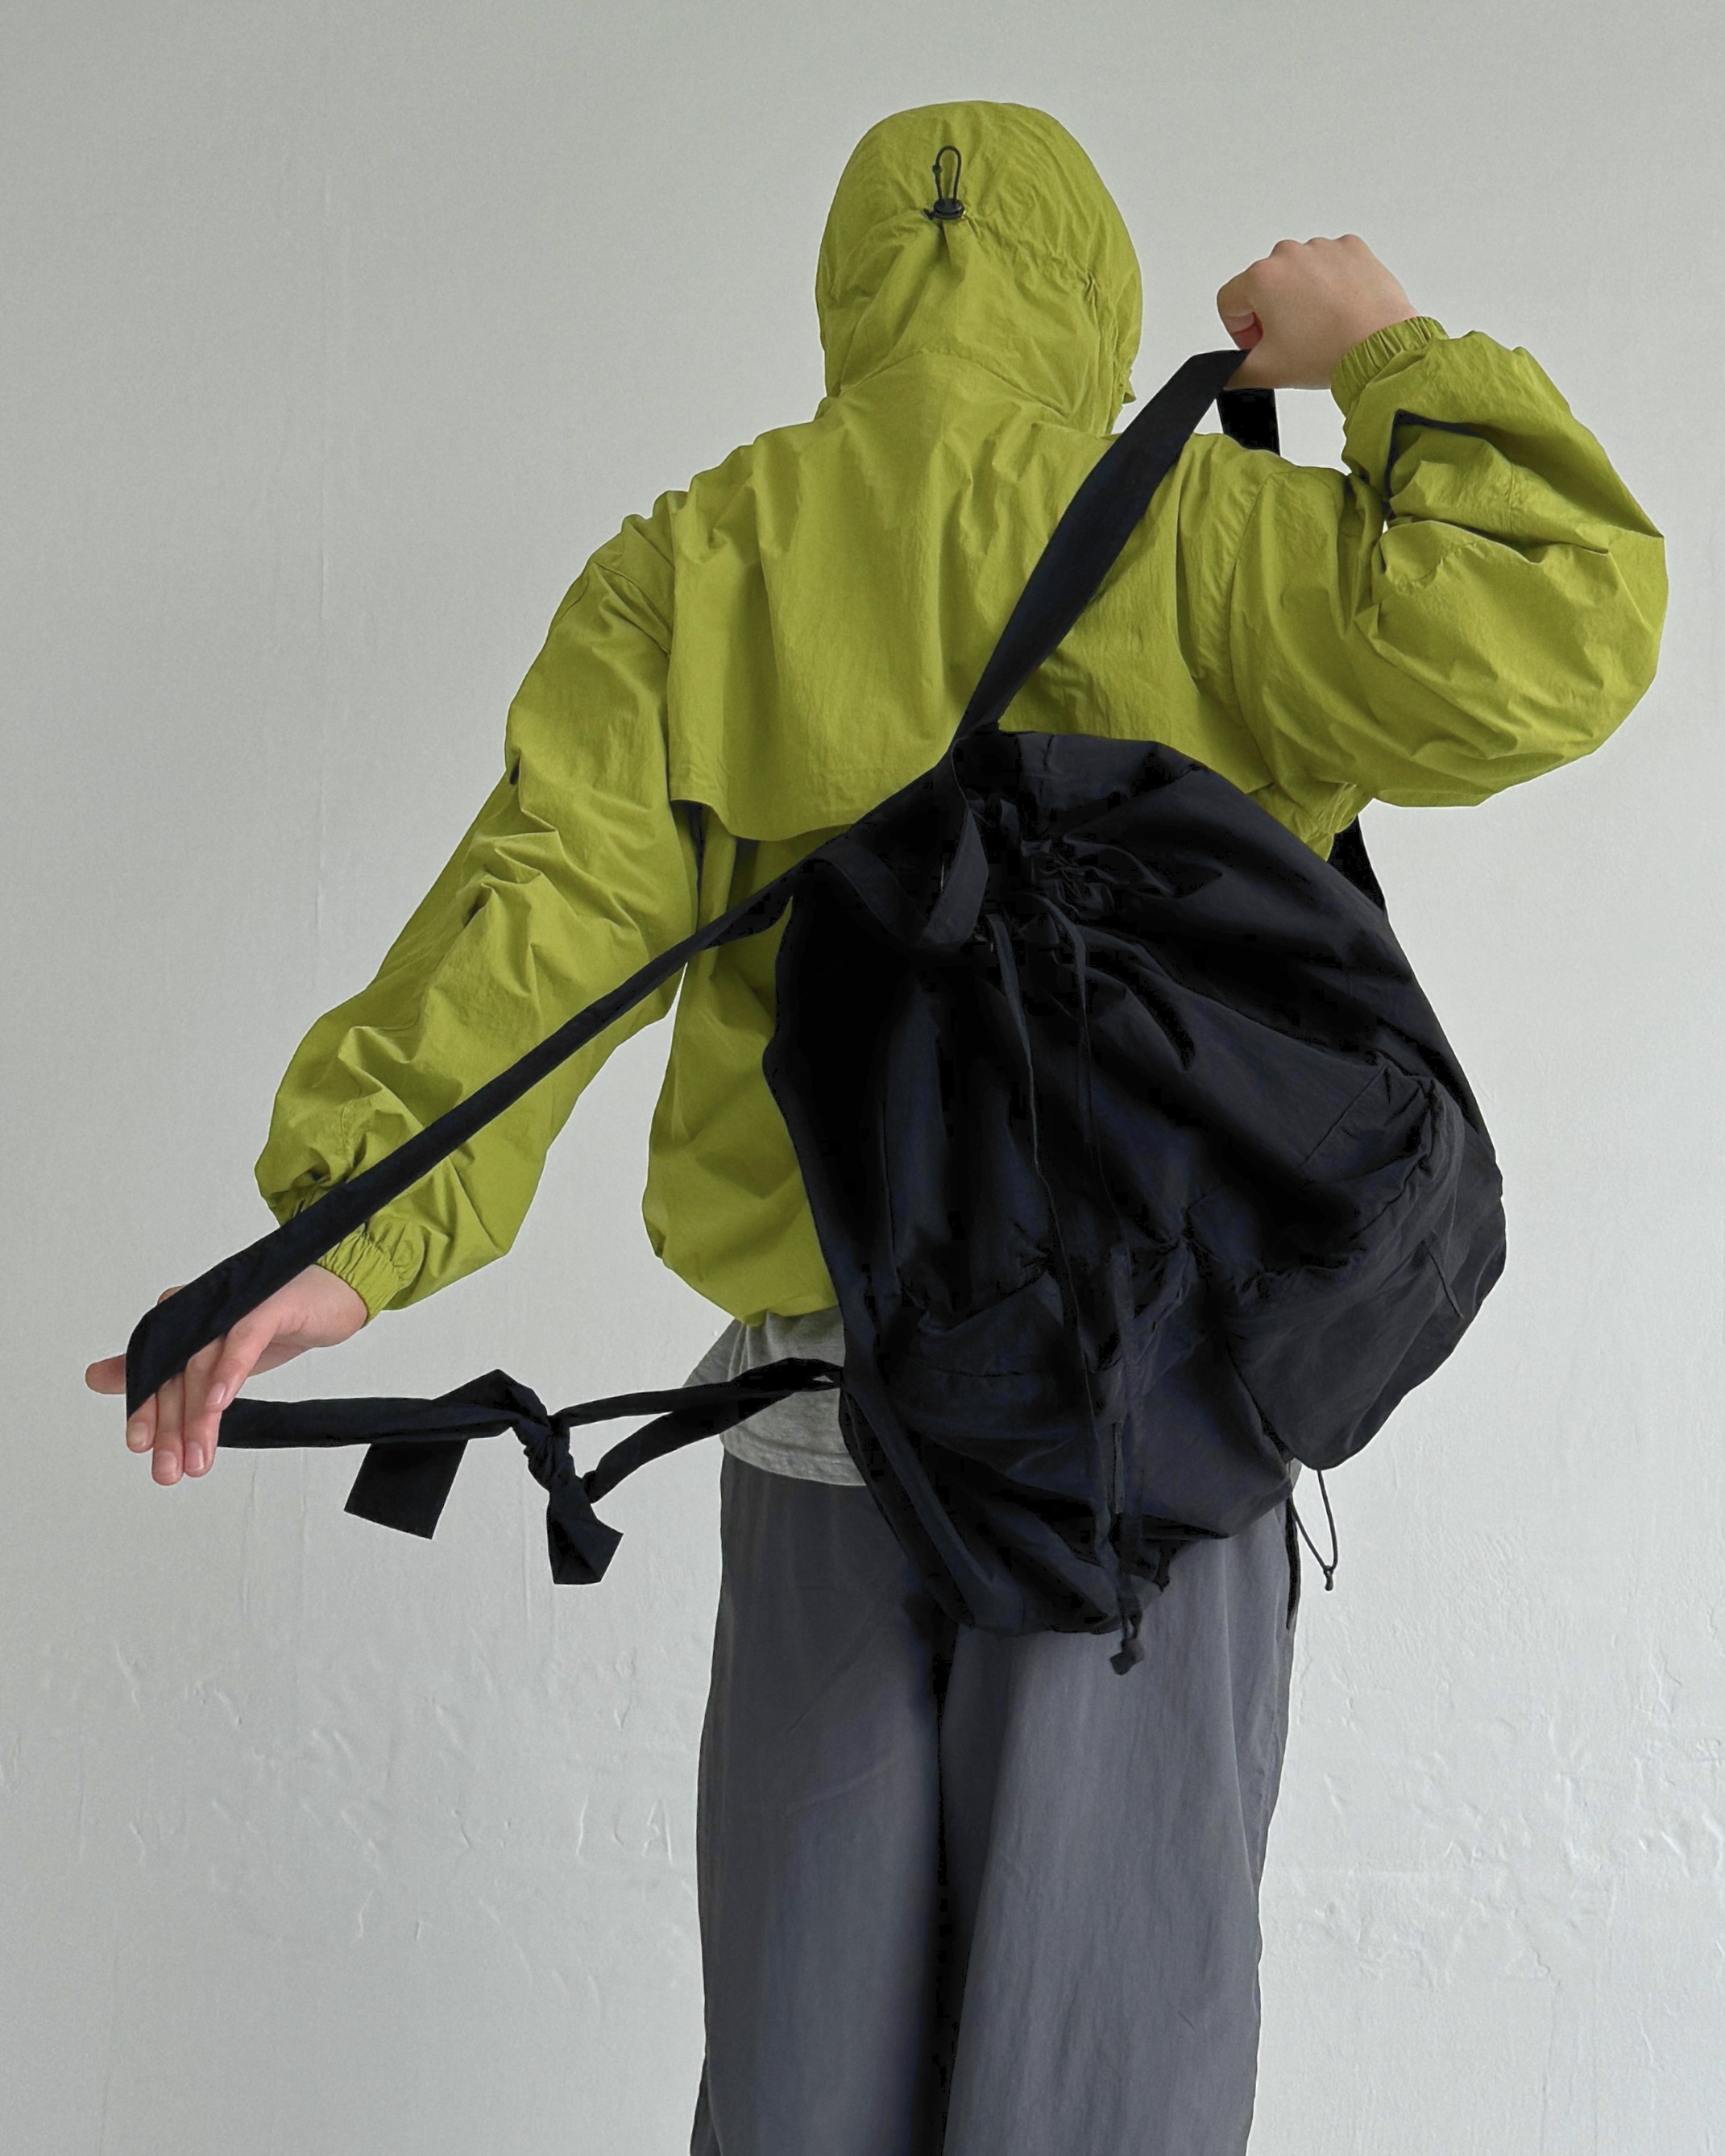 2pocket backpack